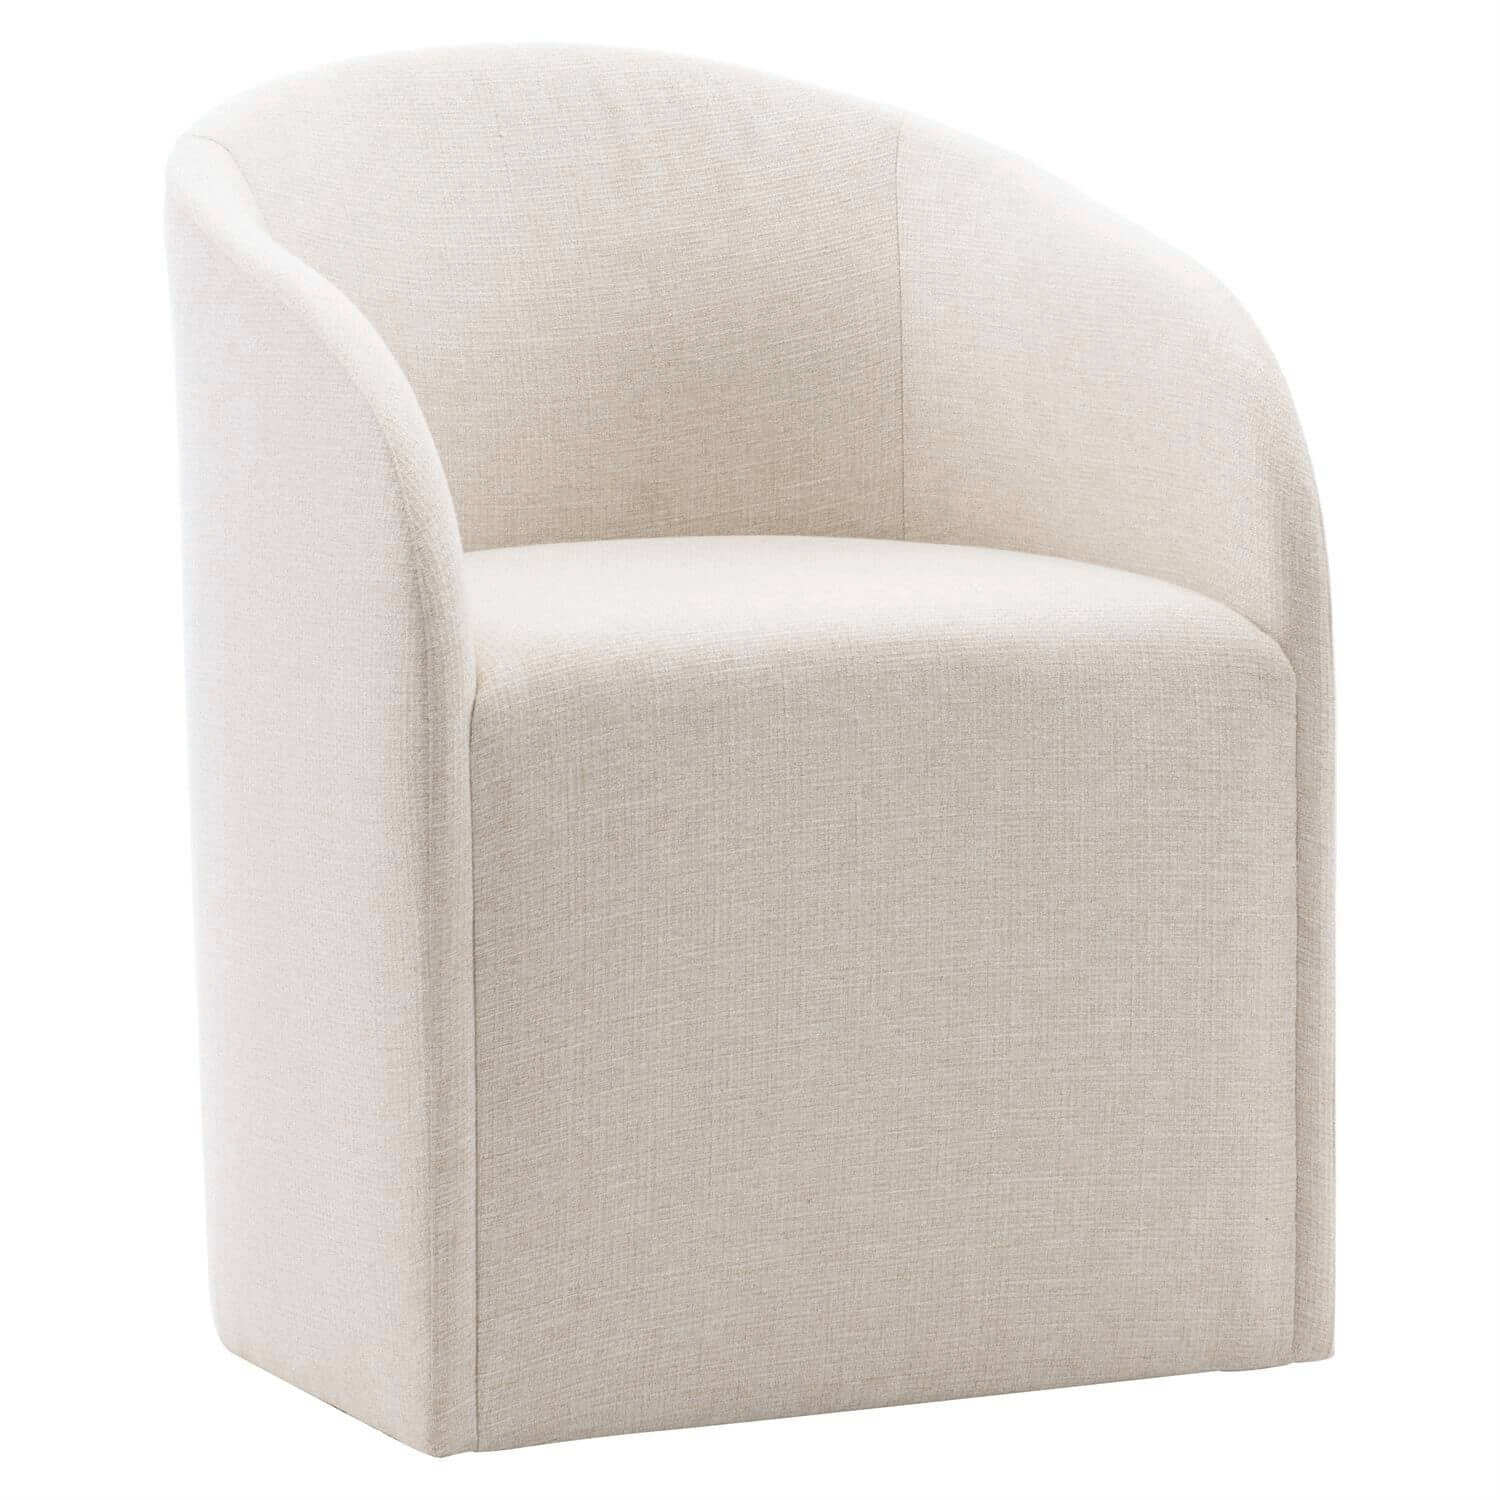 Finch Arm Chair